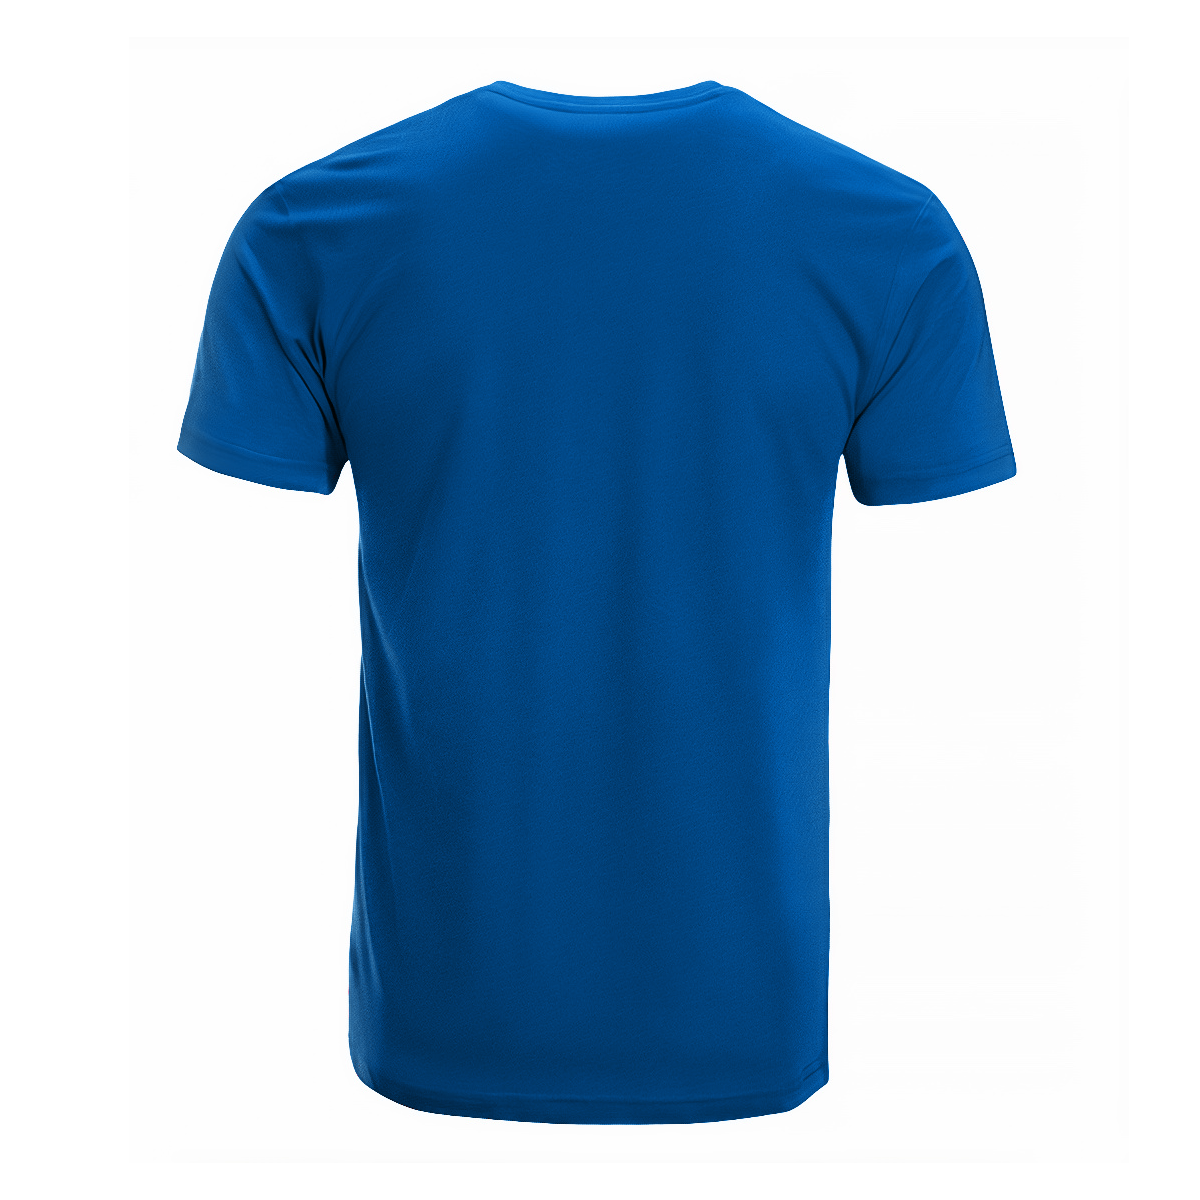 MacAuley Tartan Crest T-shirt - I'm not yelling style